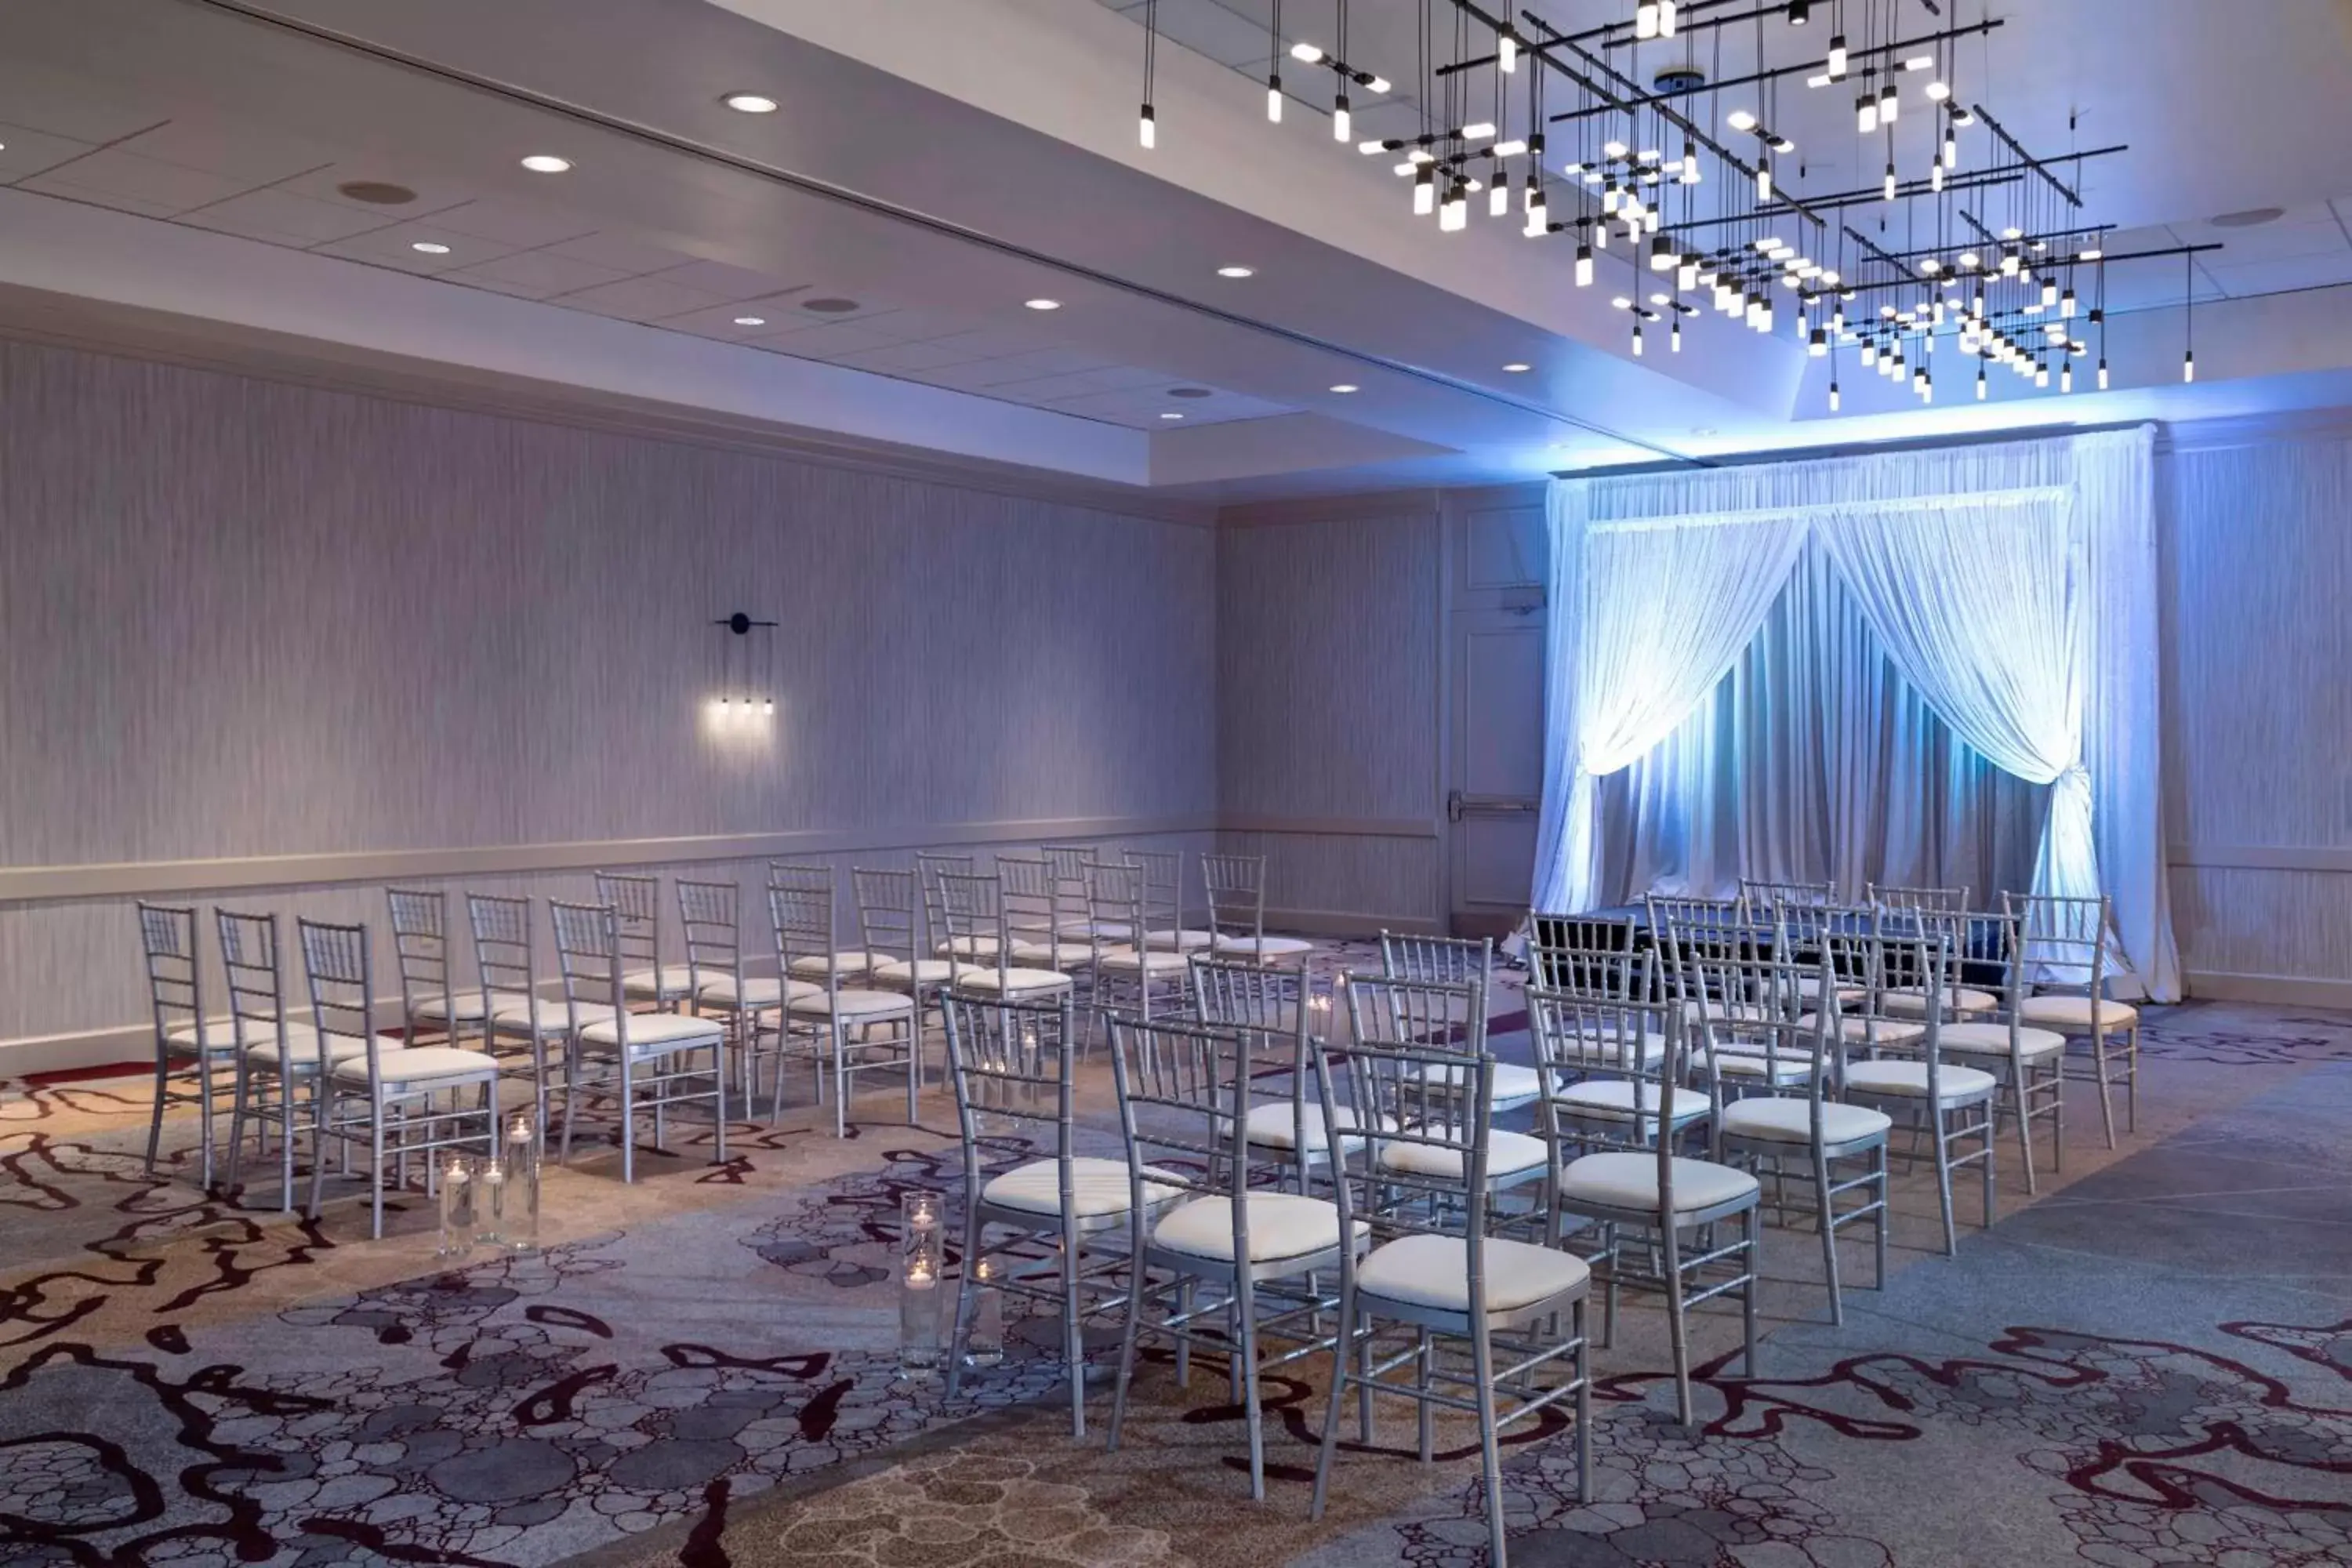 Banquet/Function facilities, Banquet Facilities in Atlanta Marriott Northeast/Emory Area